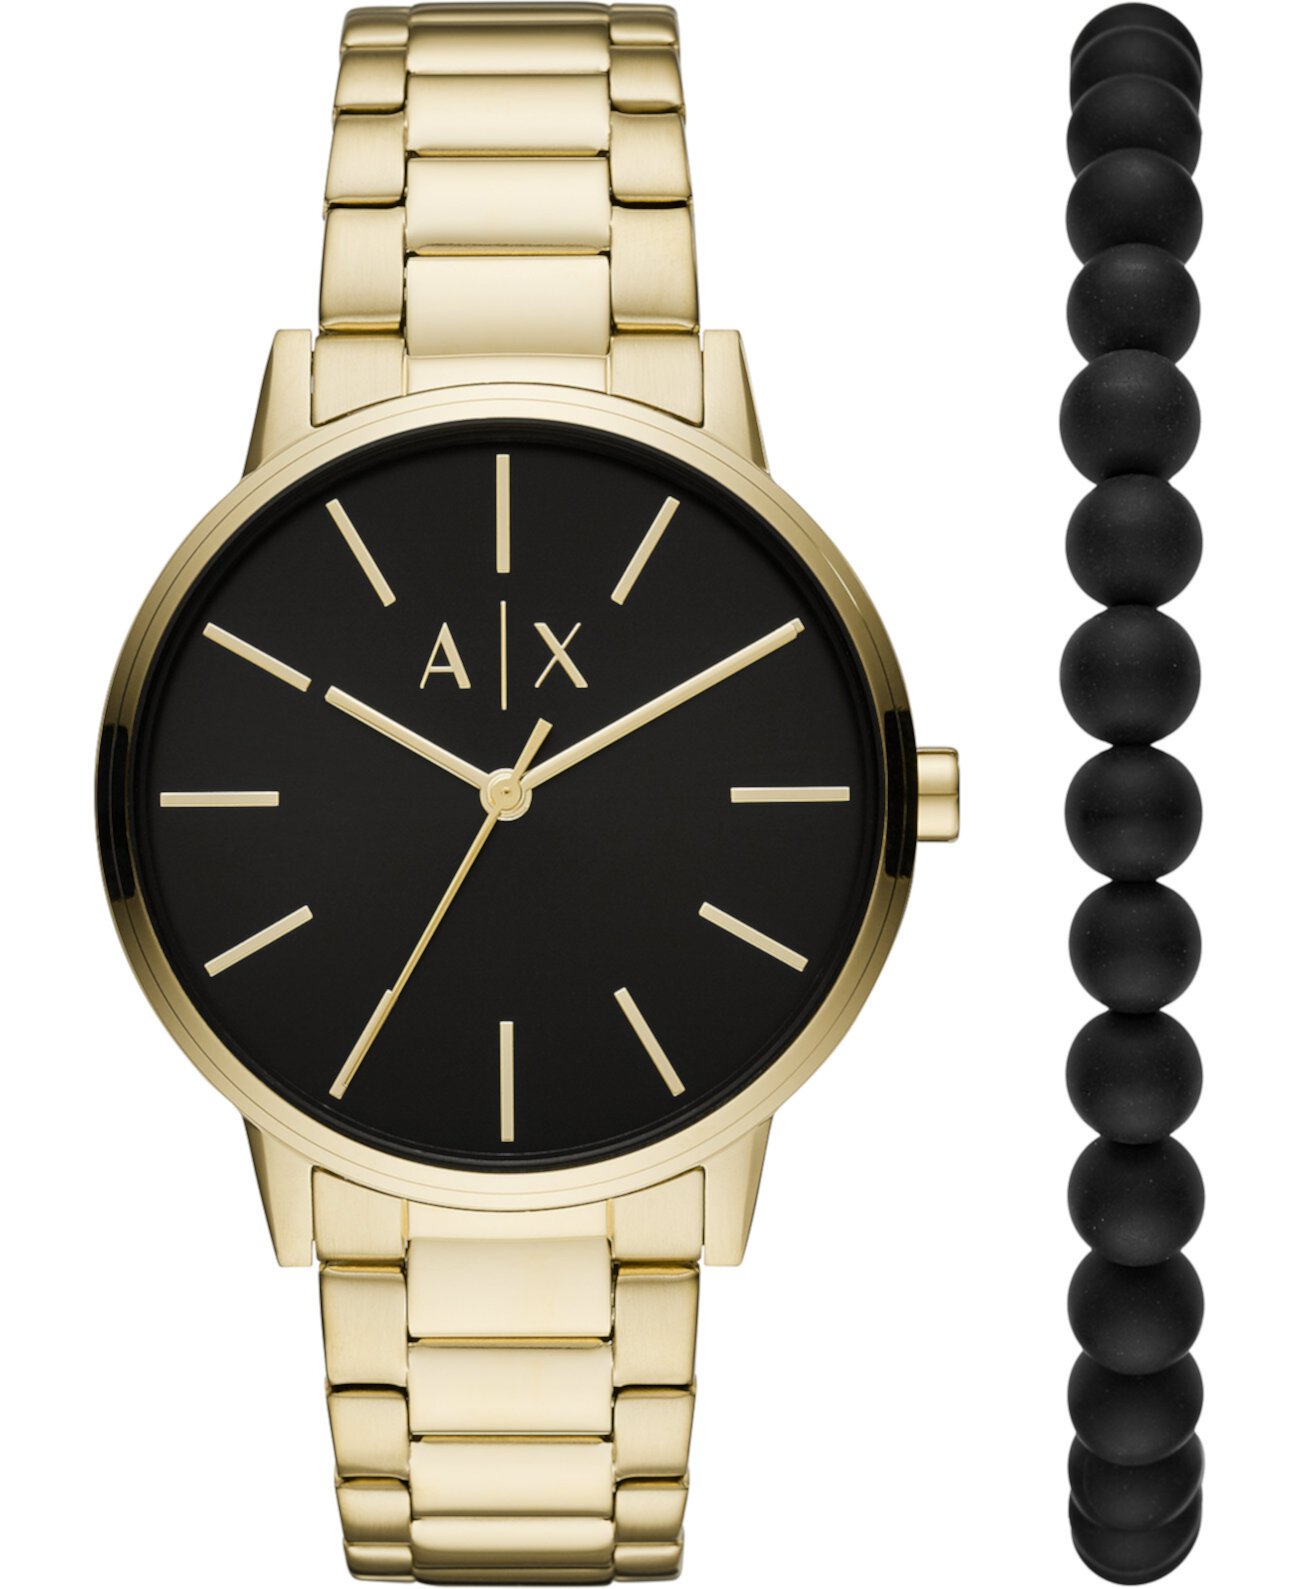 Мужские часы Cayde с золотым браслетом из нержавеющей стали, 42 мм, подарочный набор Armani